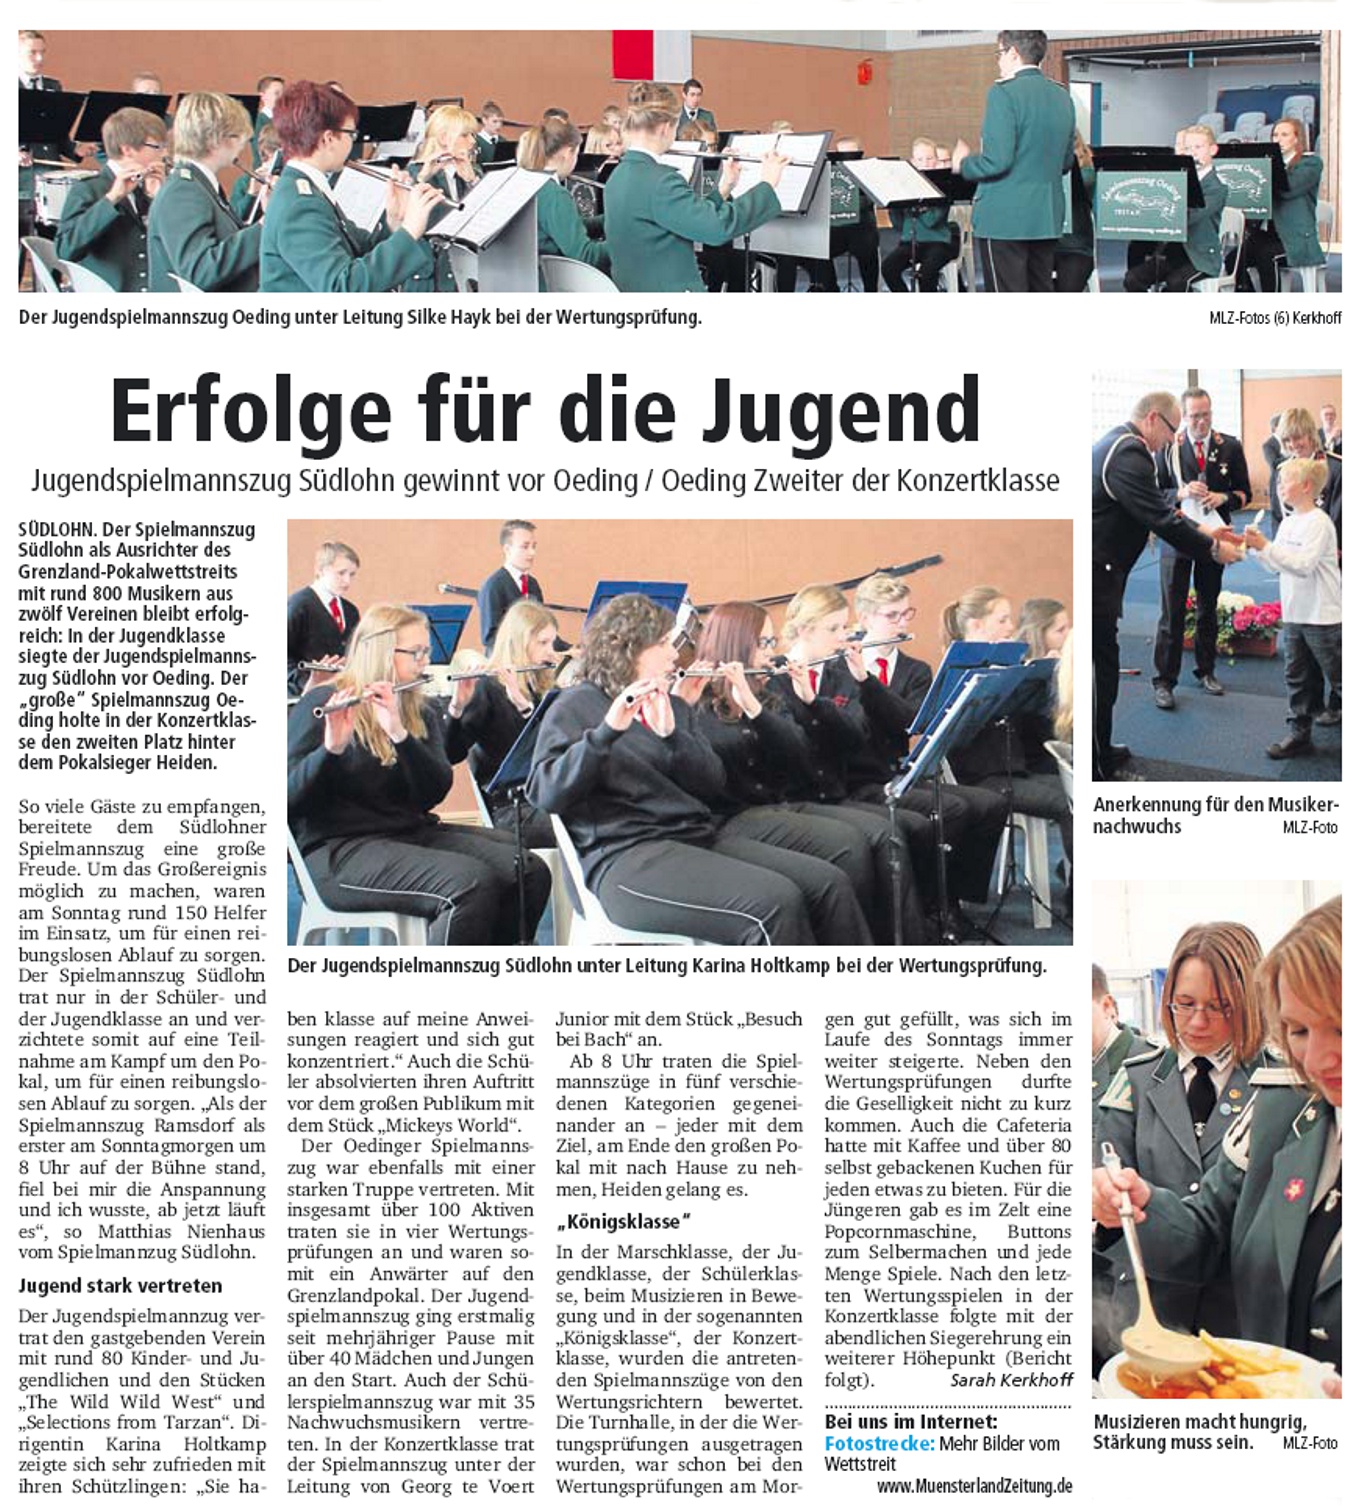 Erfolge für die Jugend | Münsterland Zeitung berichtete am 14. April 2014